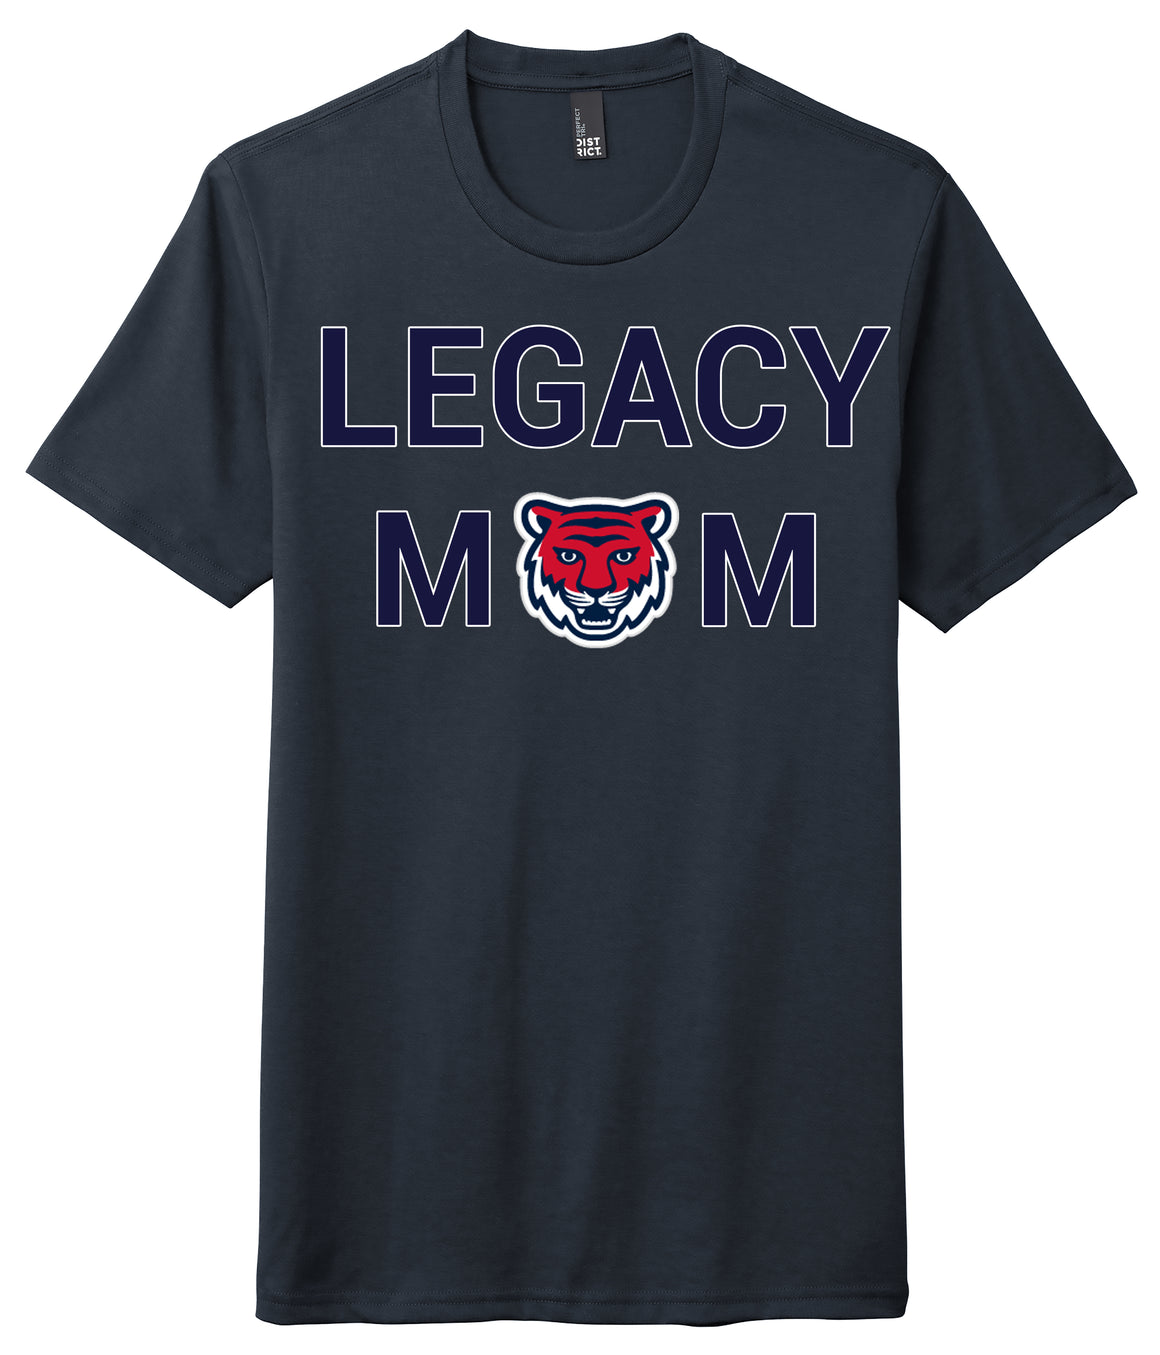 Legacy Traditional School SW Las Vegas - Mom Shirt